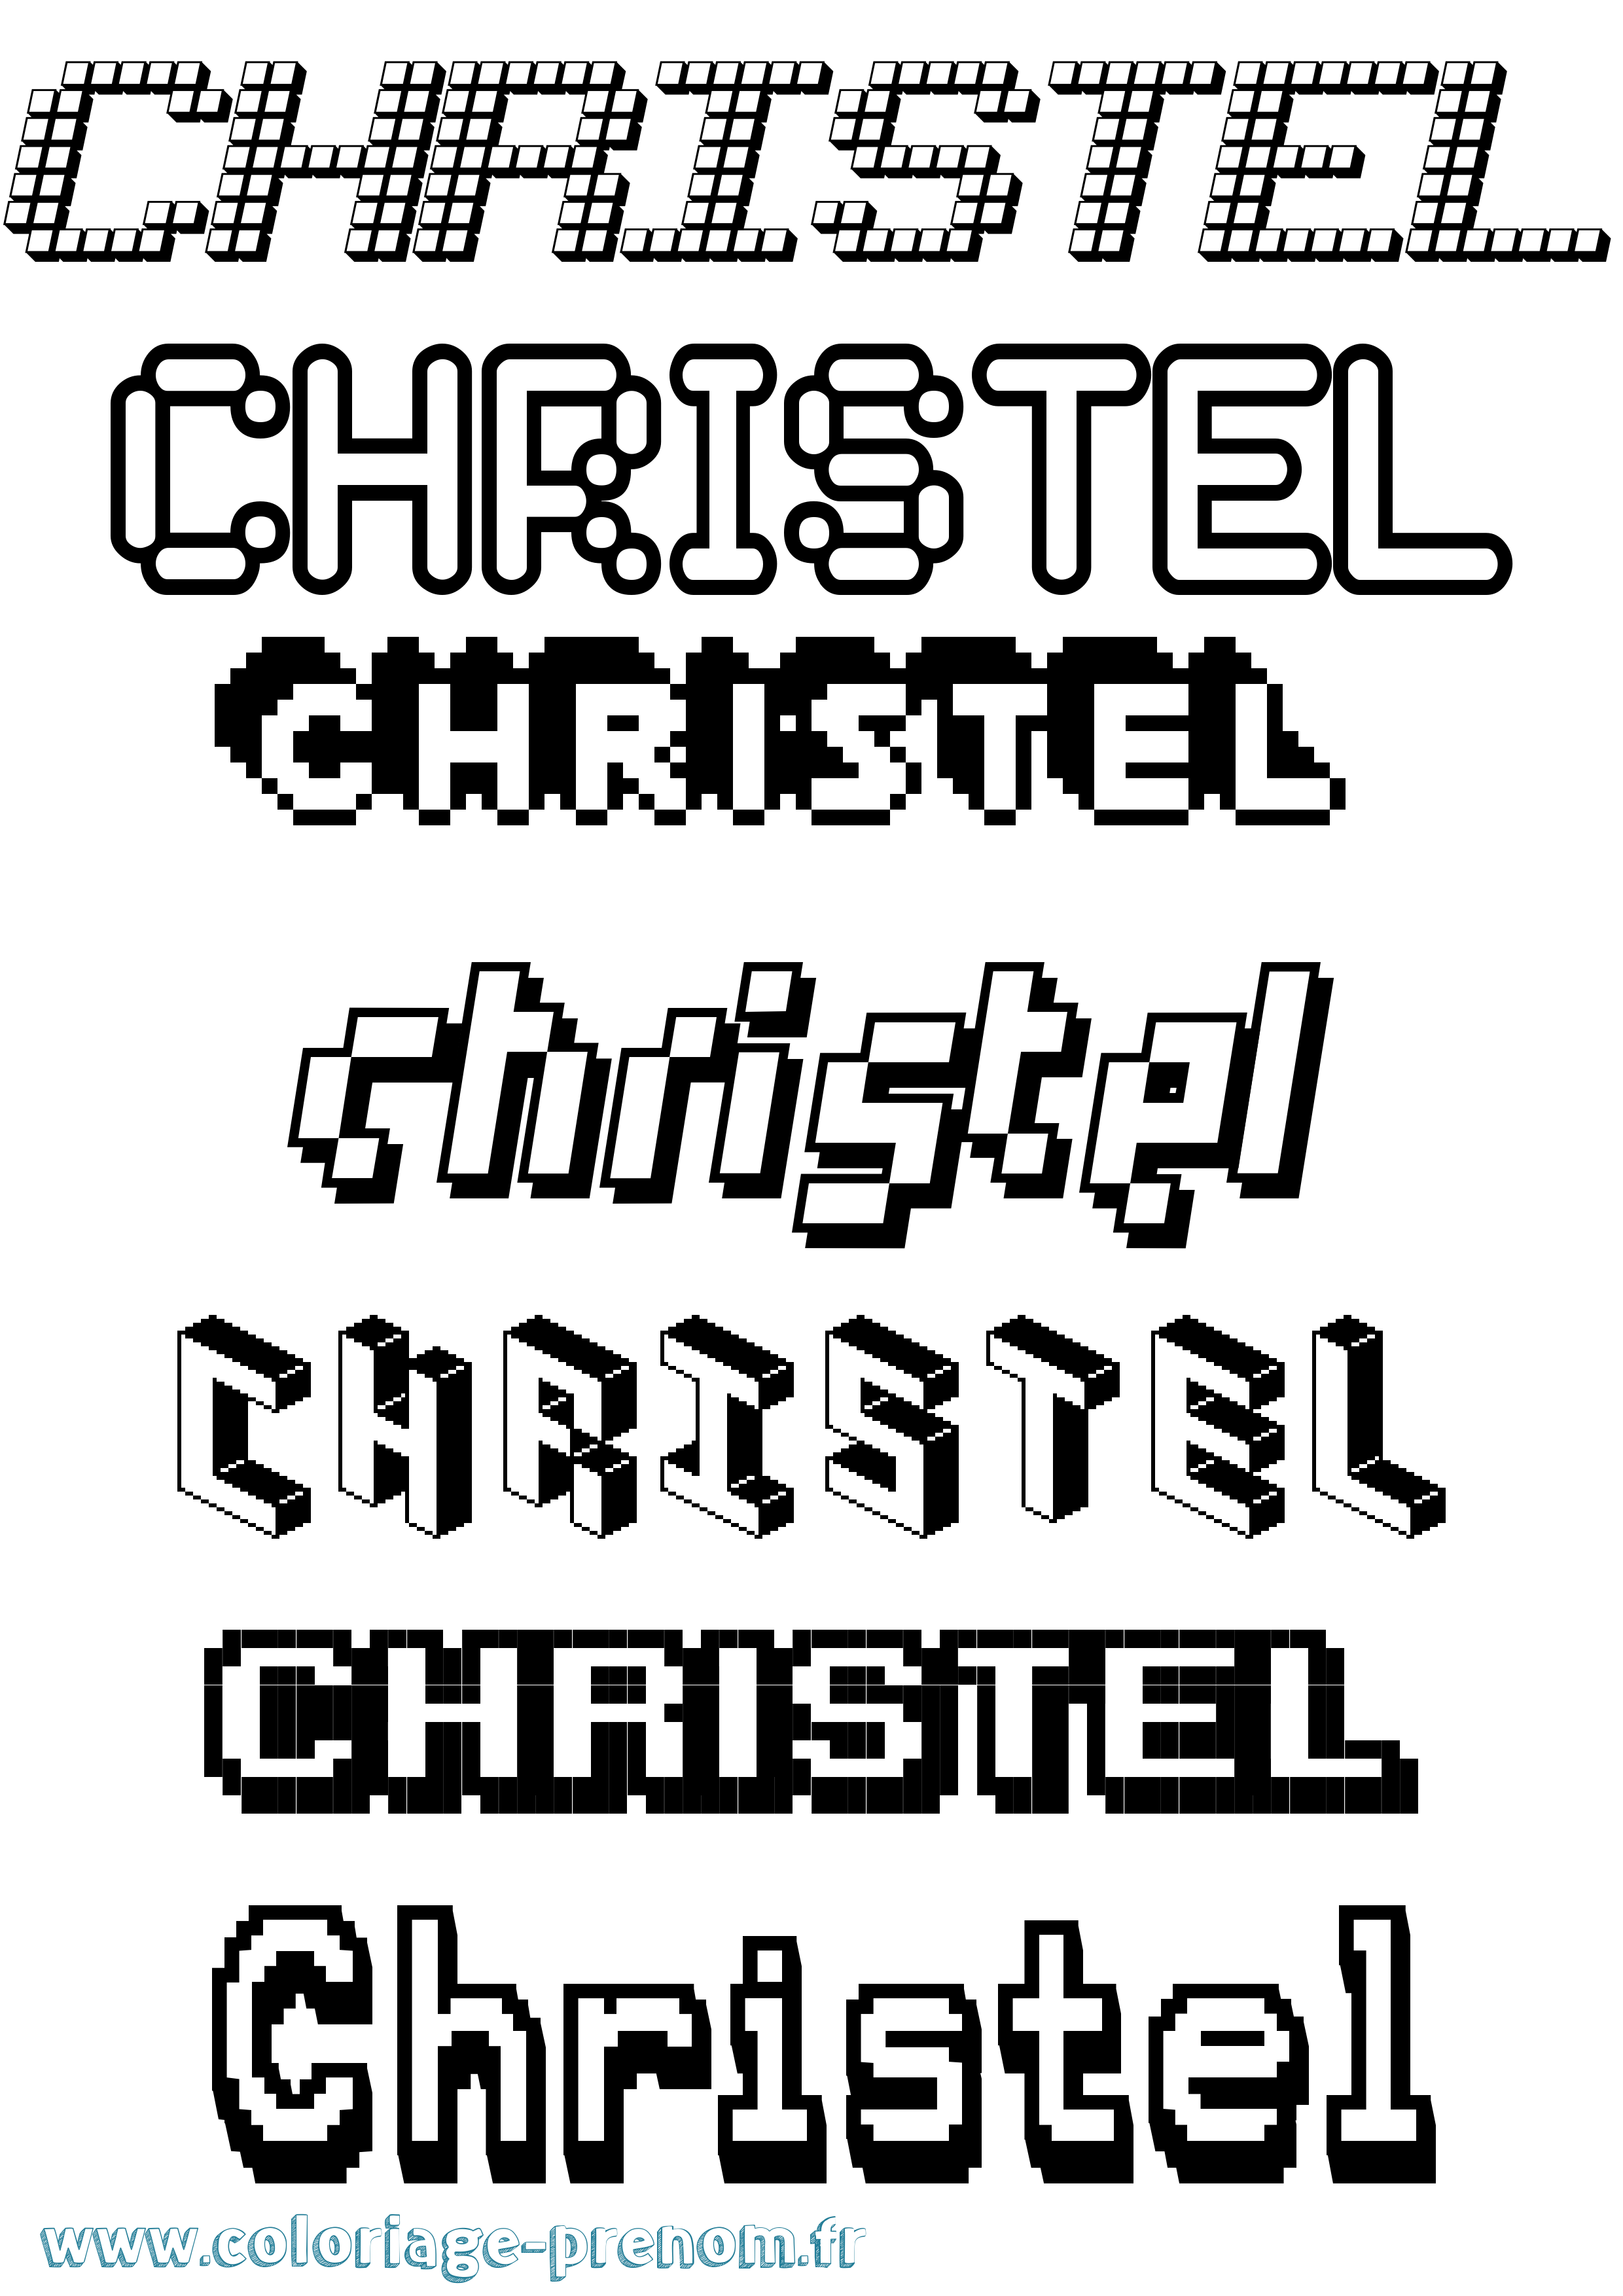 Coloriage prénom Christel Pixel